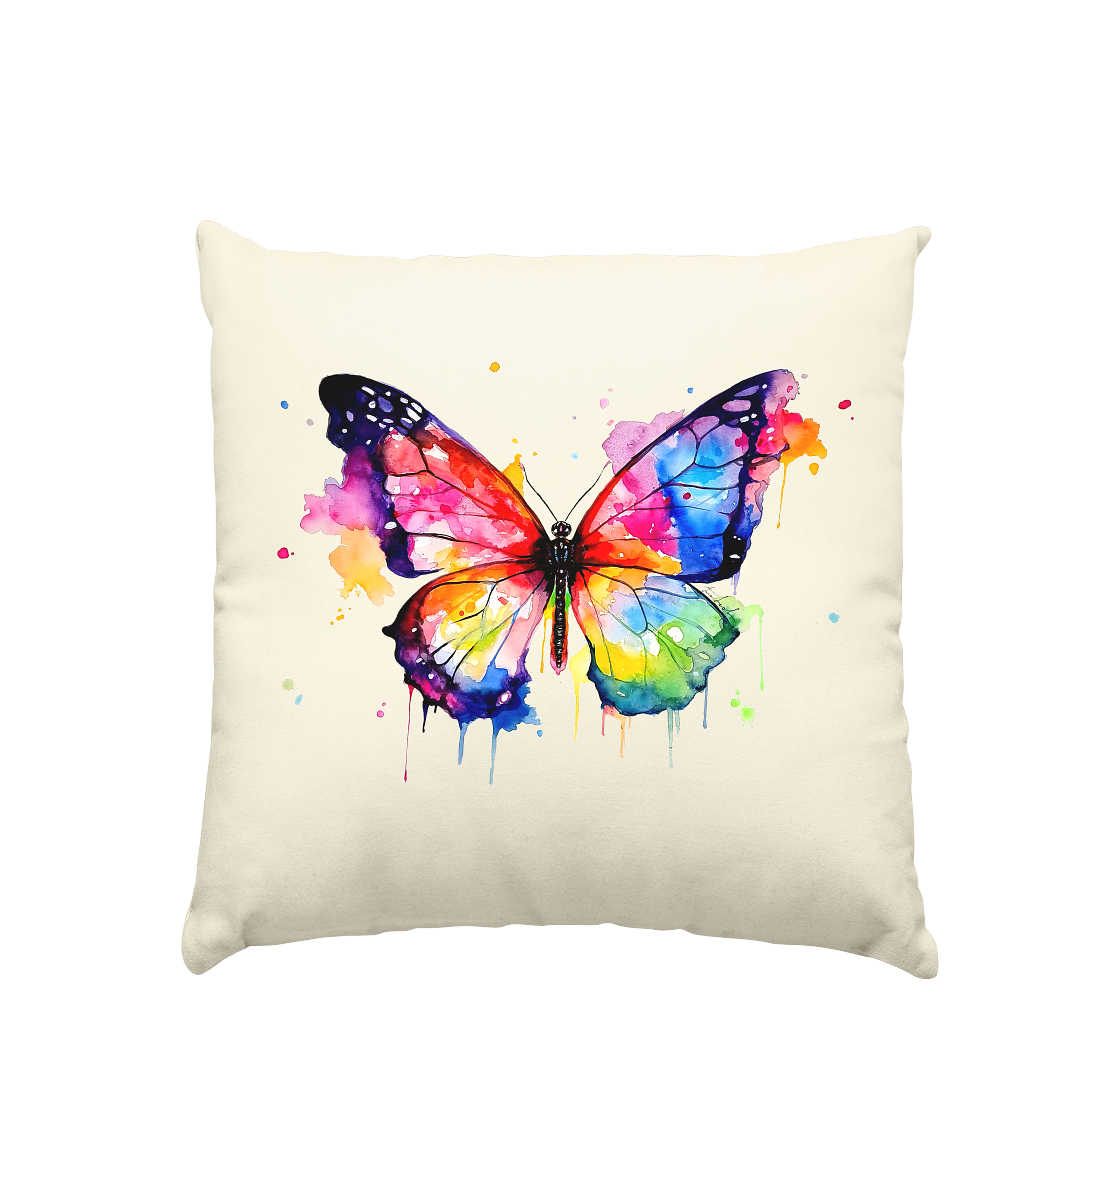 Motiv farbenfroher Schmetterling - Kissen natur 40x40cm